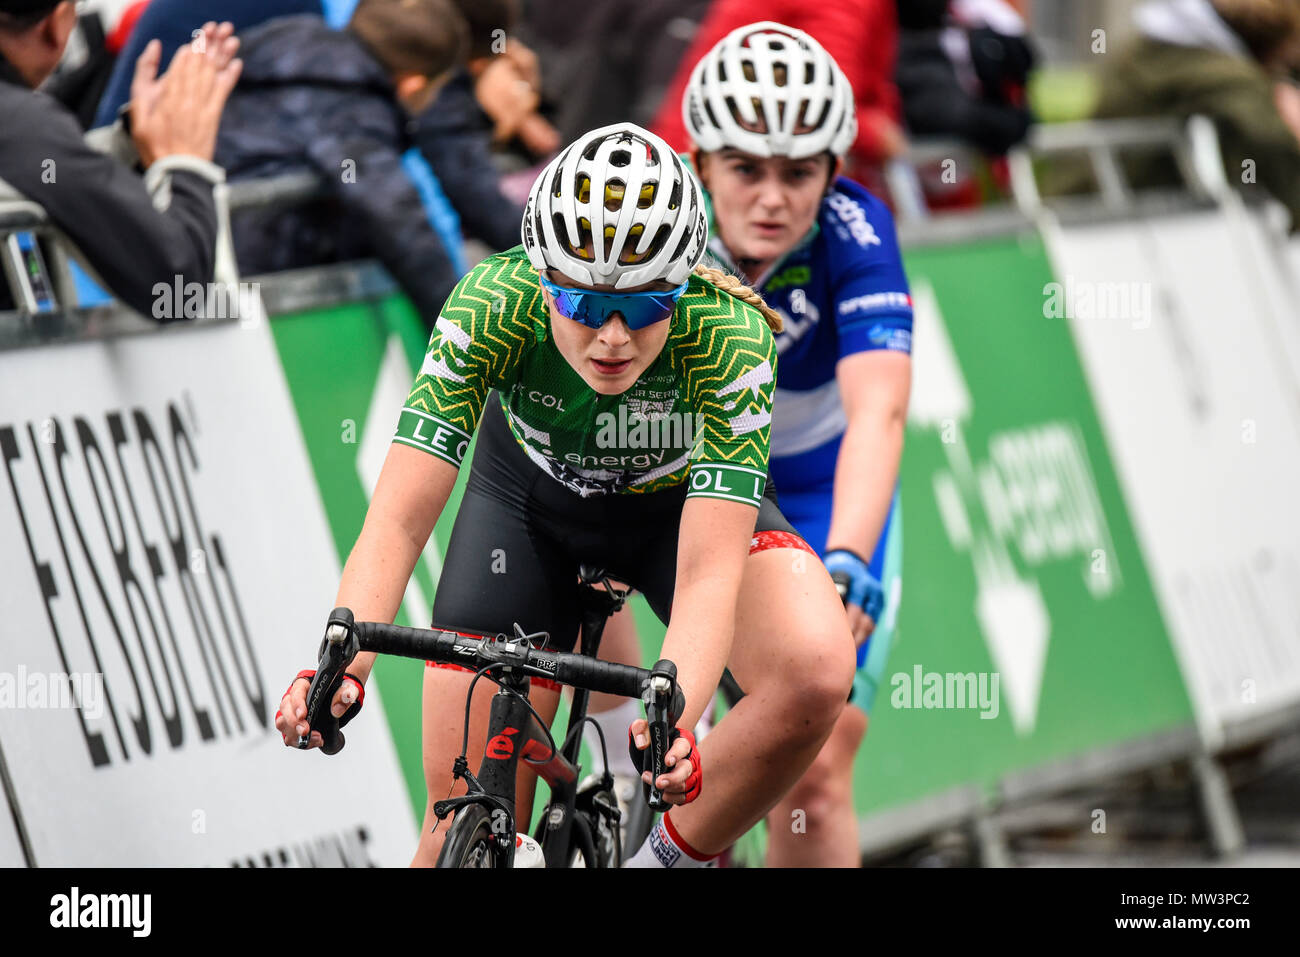 Abbie Dentus von Team Breeze racing in der Elite Frauen 2018 OVO Energy Tour Serie Radrennen im Wembley, London, UK. Runde 7 Bike Race. Stockfoto